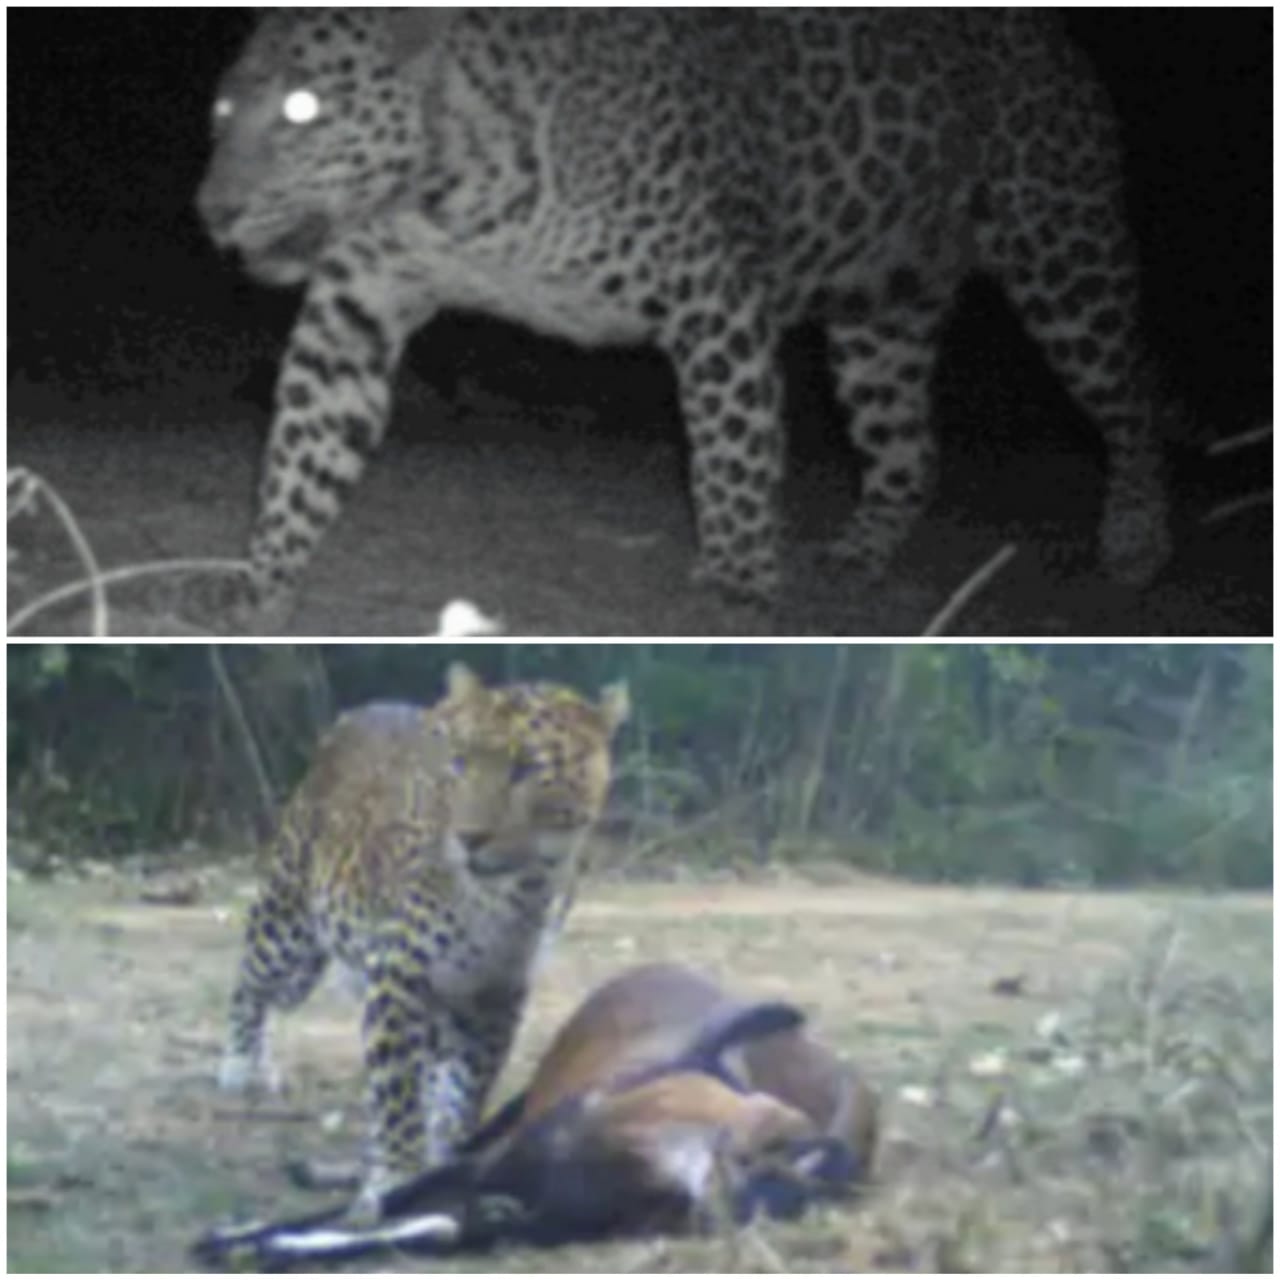 JHARKHAND : लातेहार के बेतला नेशनल पार्क में दिखा तेंदुआ, सीसीटीवी में तस्वीरें कैद, पहली बार इस इलाके में…